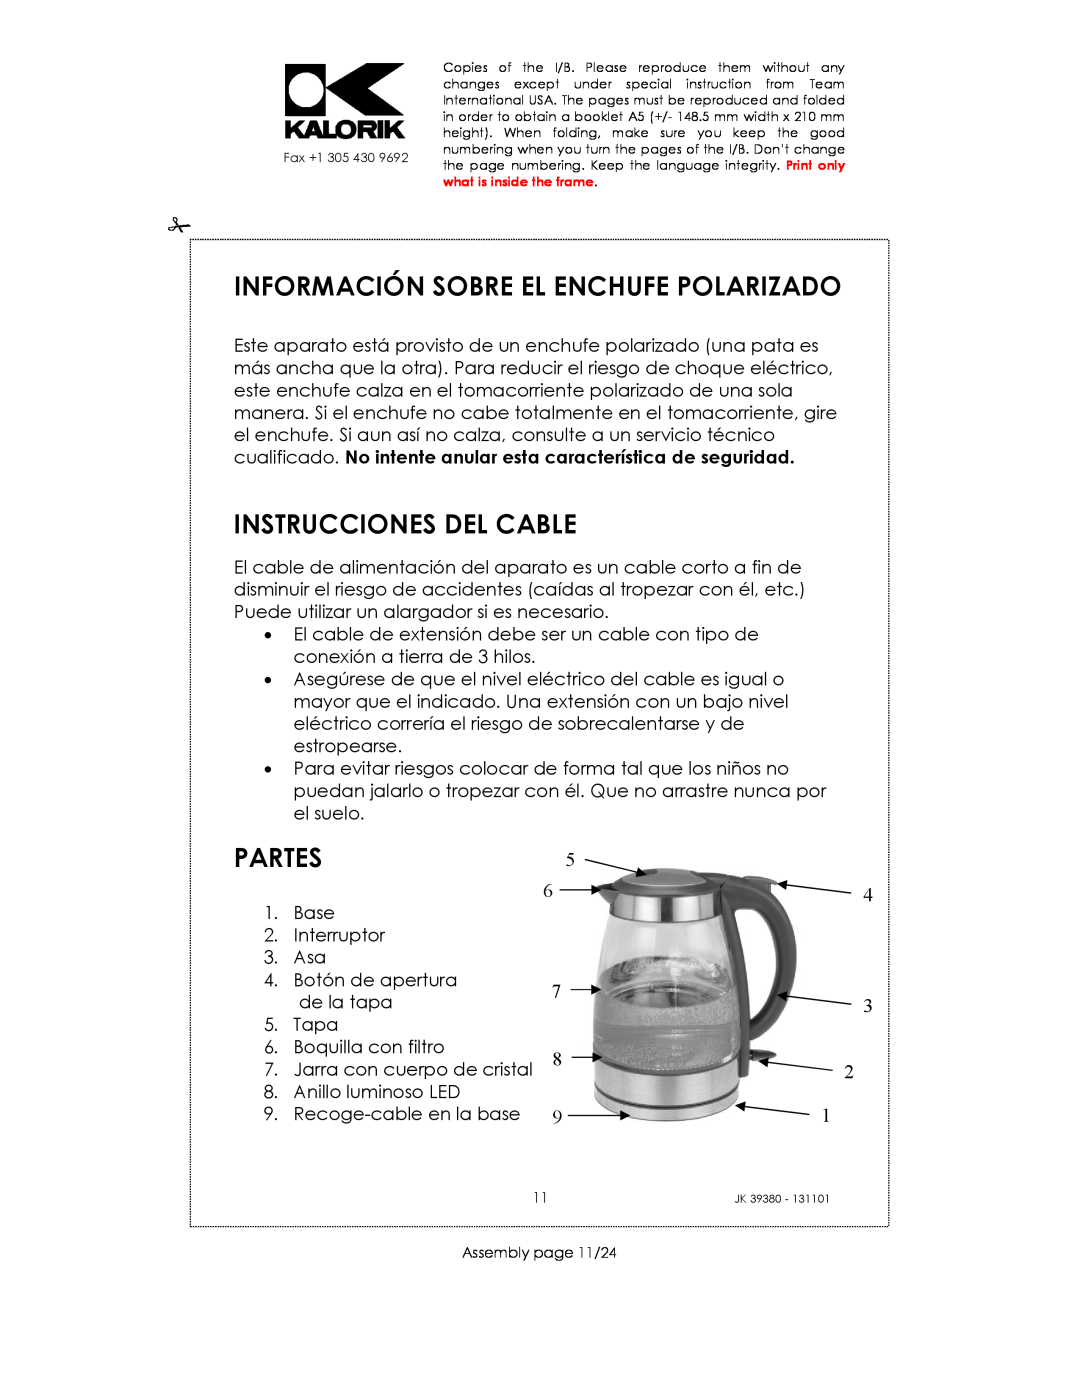 Kalorik JK 39380 manual Información Sobre El Enchufe Polarizado, Instrucciones Del Cable, Partes 